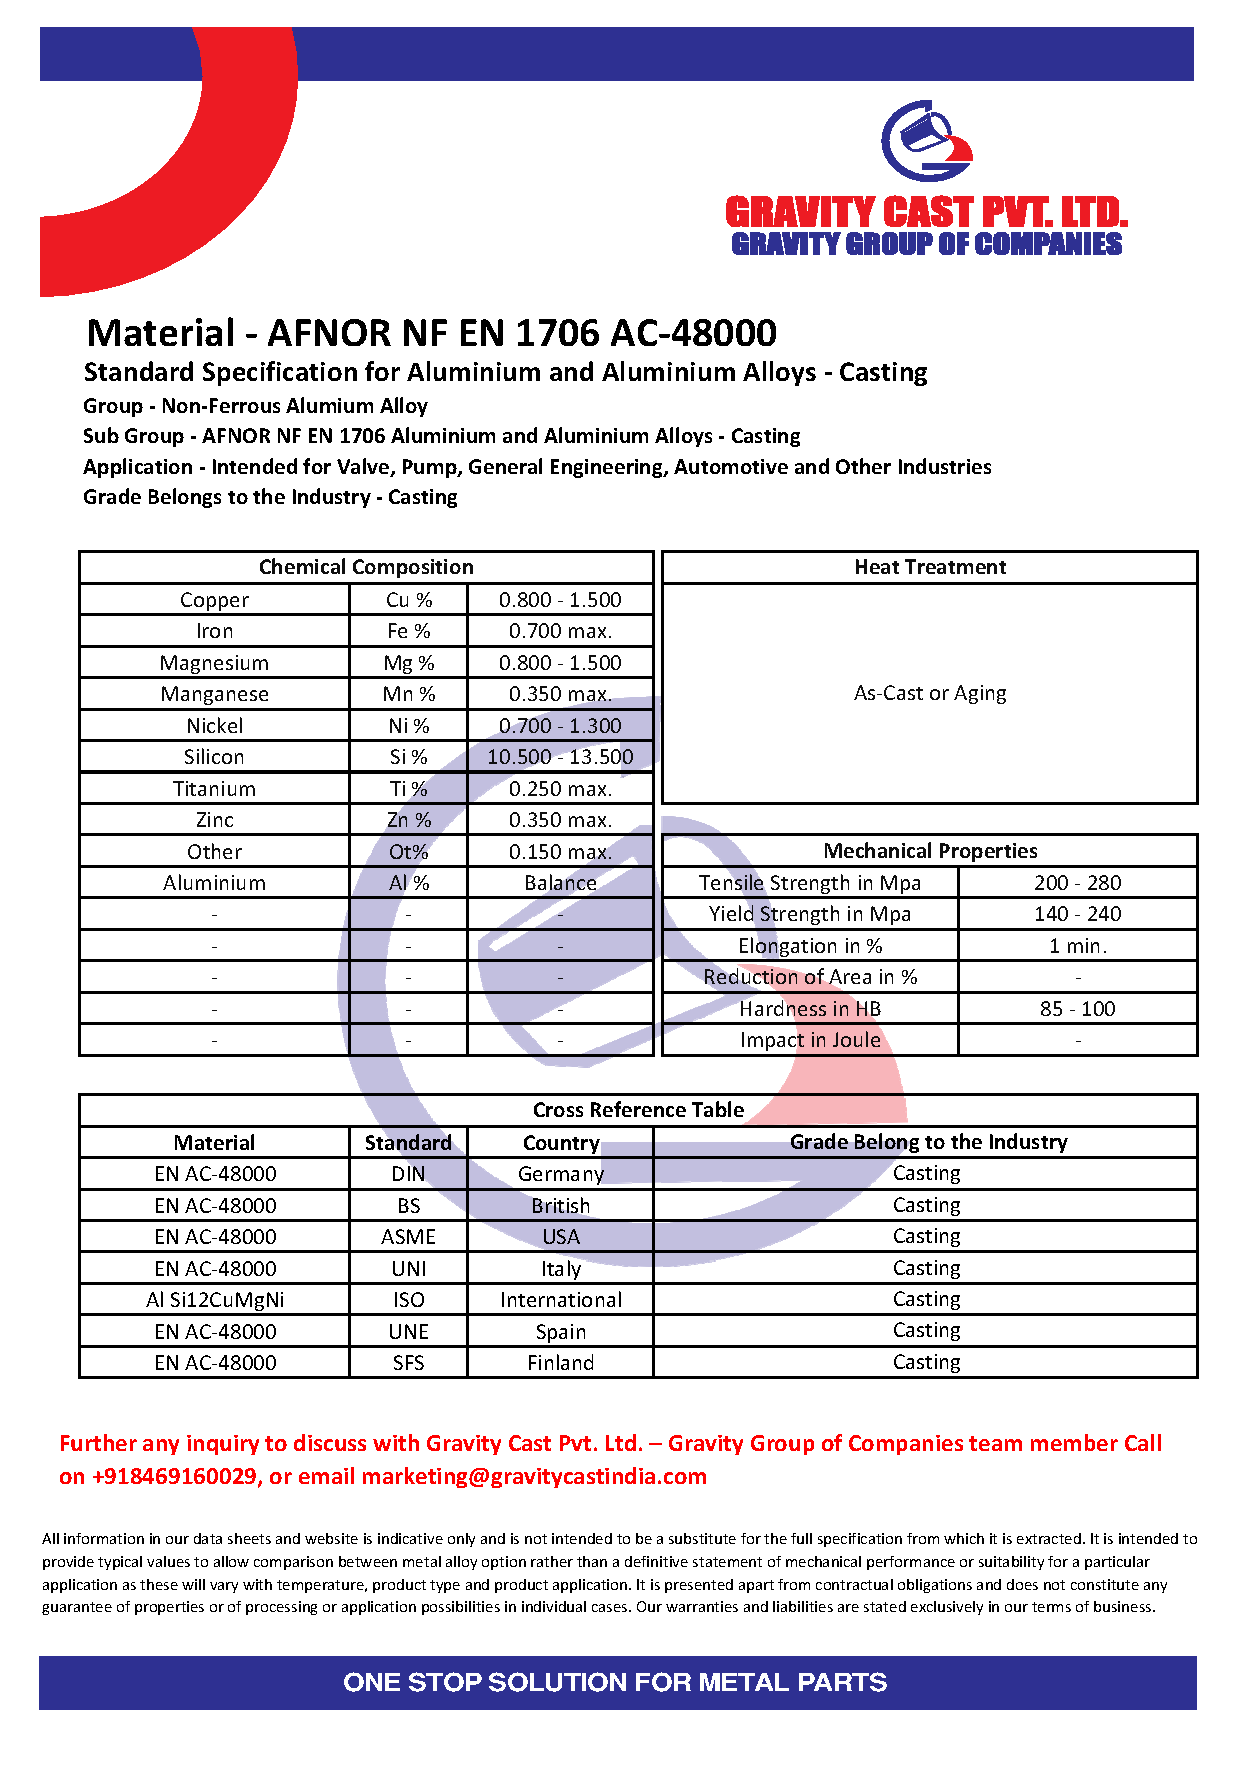 AFNOR NF EN 1706 AC-48000.pdf